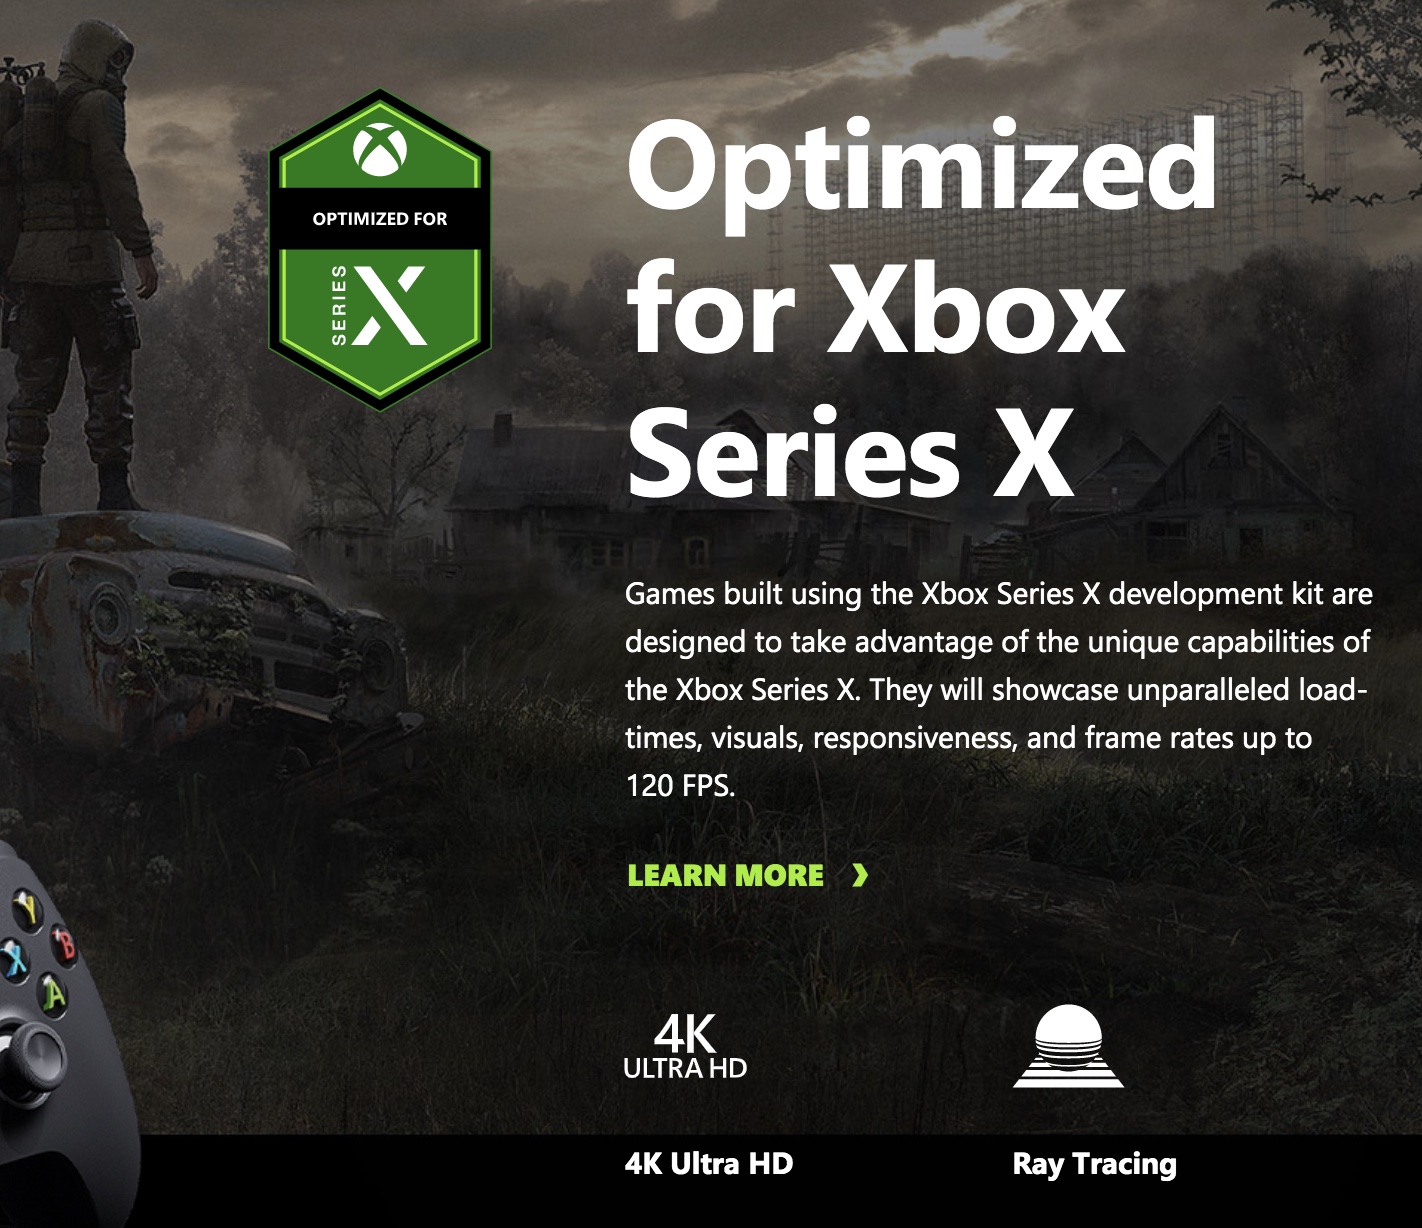 S.T.A.L.K.E.R 2 Will Support Ray-Tracing On Xbox Series X